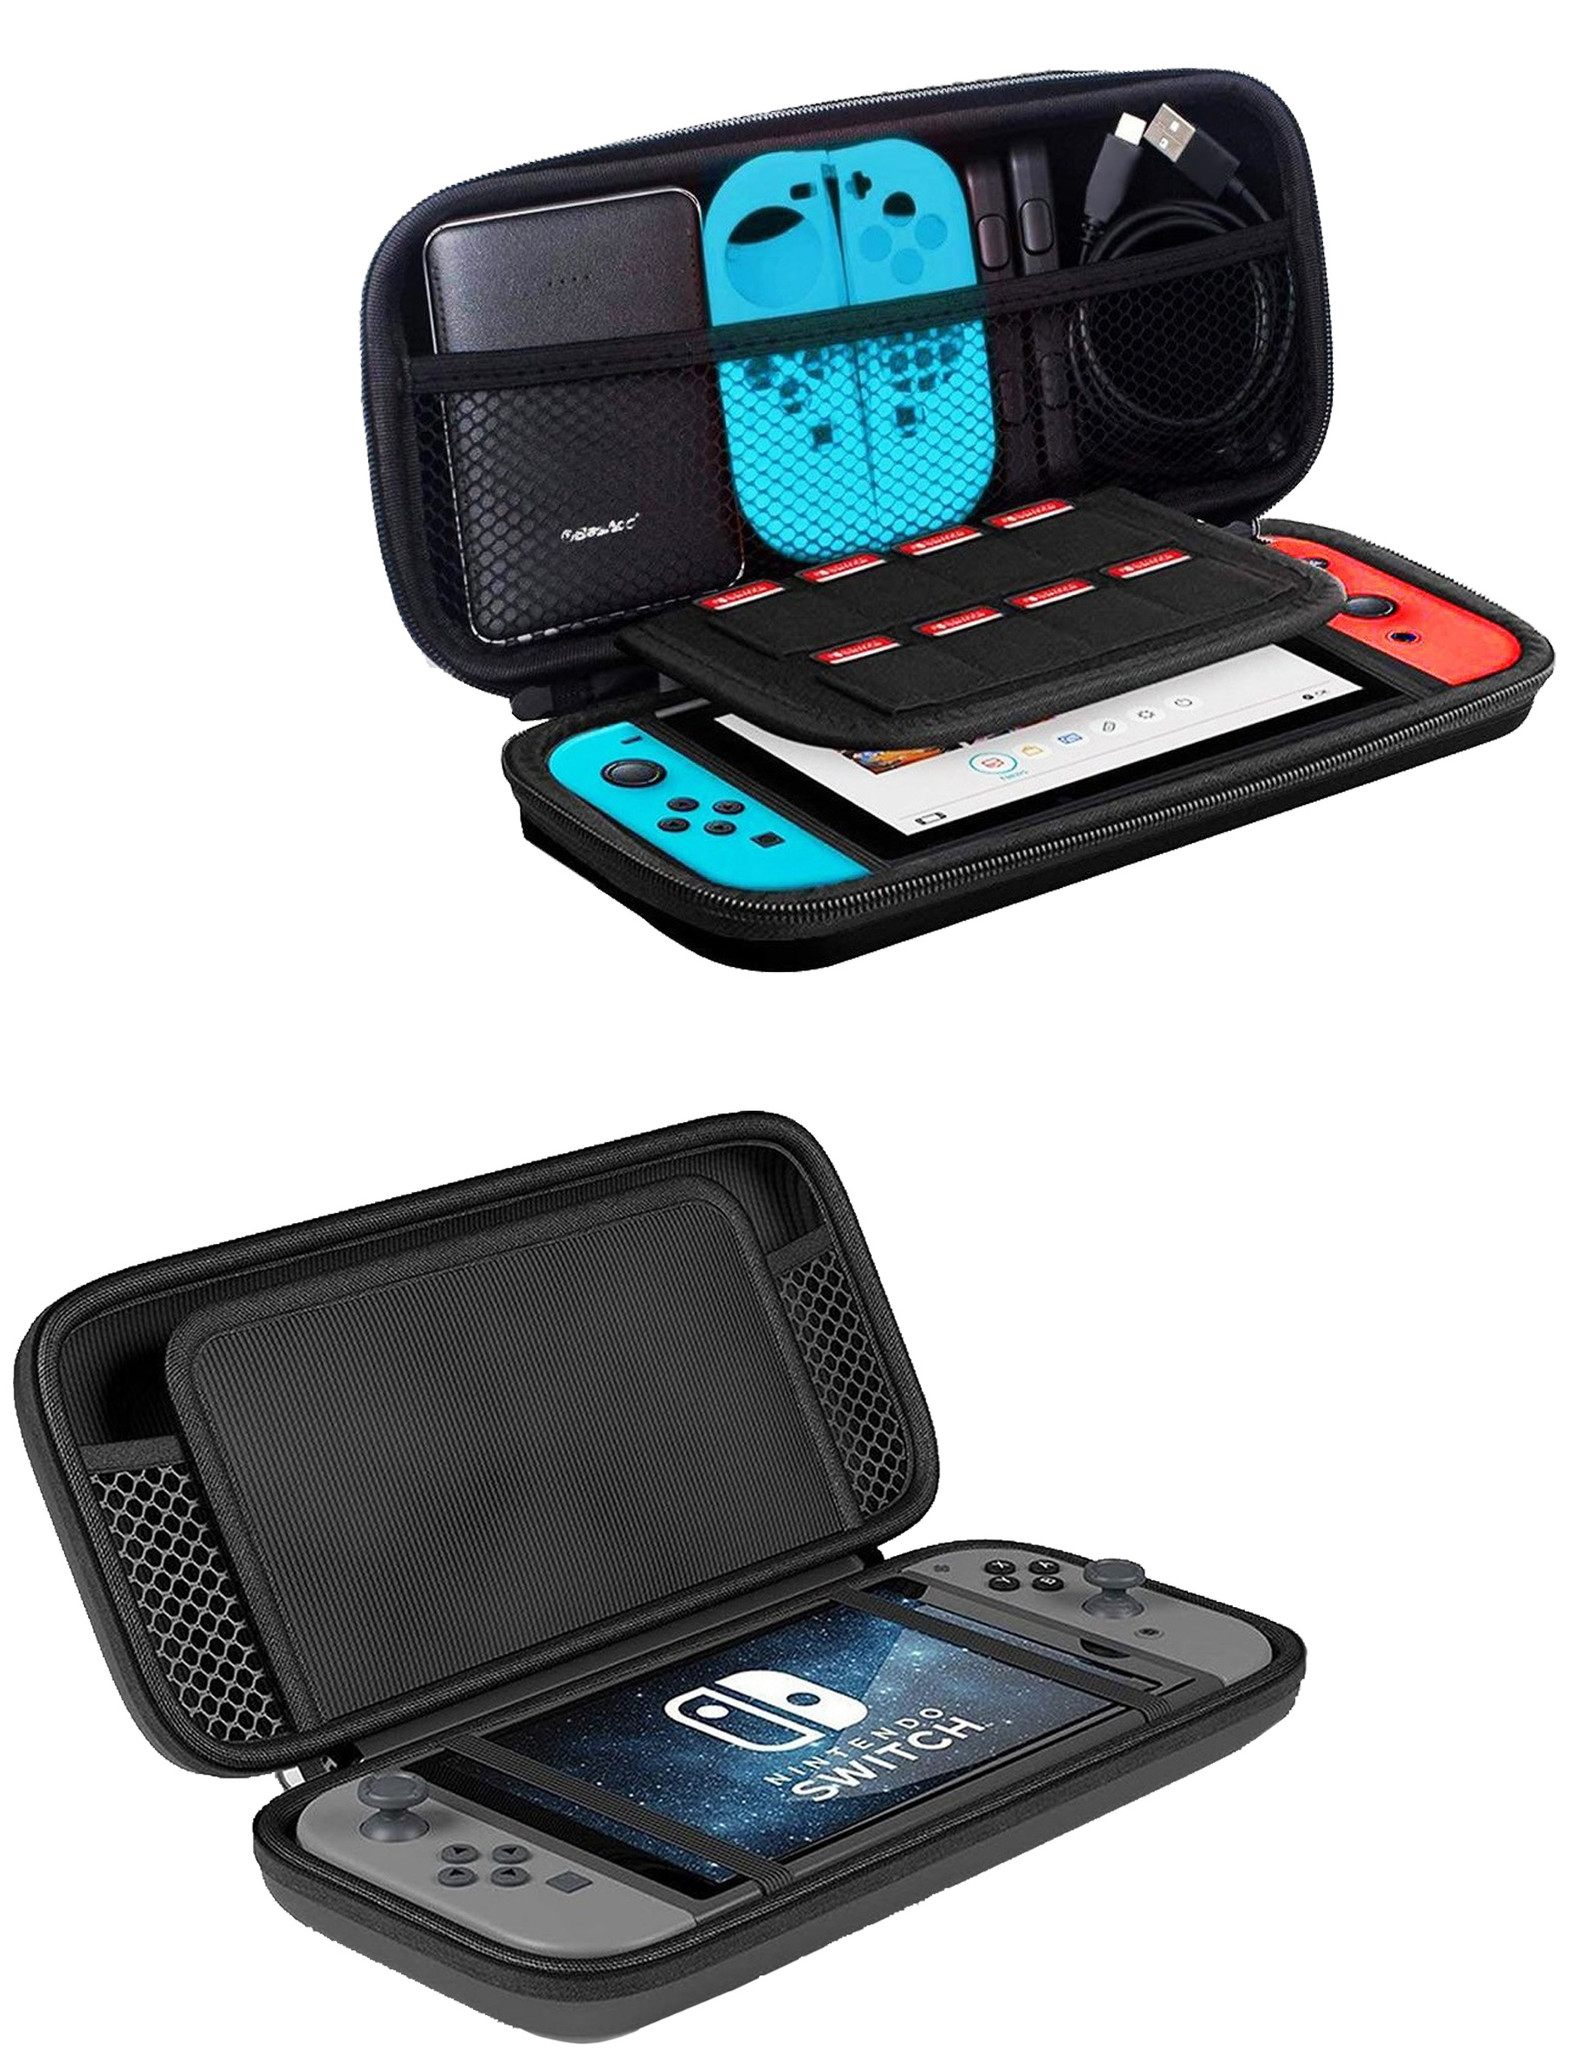 Case Geschikt Voor Nintendo Switch OLED Hoes Cover - Geschikt voor Nintendo Switch OLED Bescherm Hoes Met Koord - Zwart